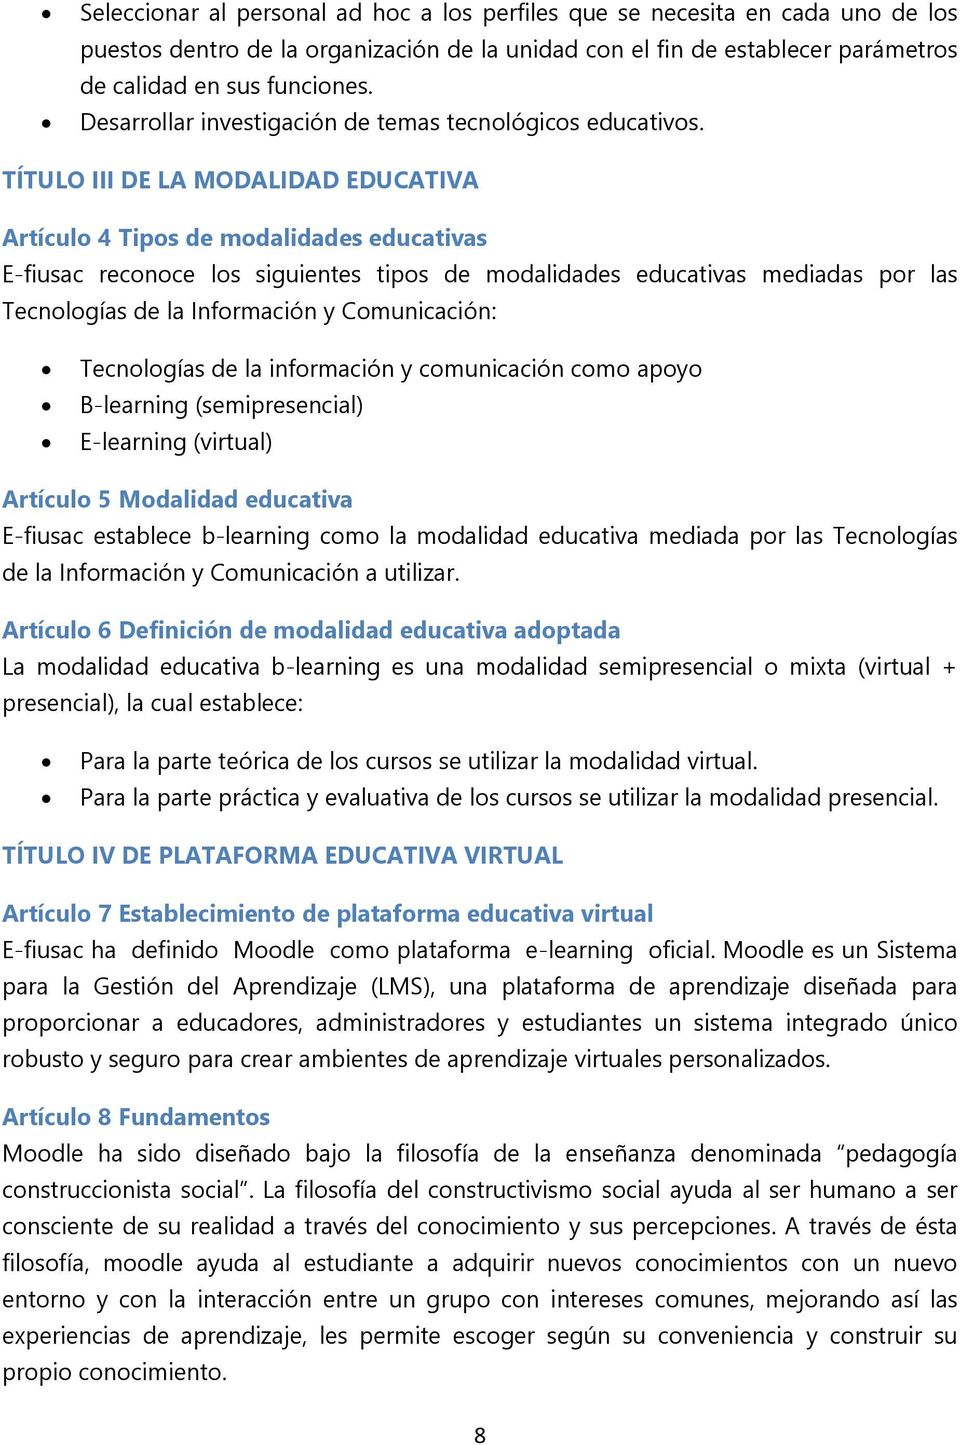 TÍTULO III DE LA MODALIDAD EDUCATIVA Artículo 4 Tipos de modalidades educativas E-fiusac reconoce los siguientes tipos de modalidades educativas mediadas por las Tecnologías de la Información y